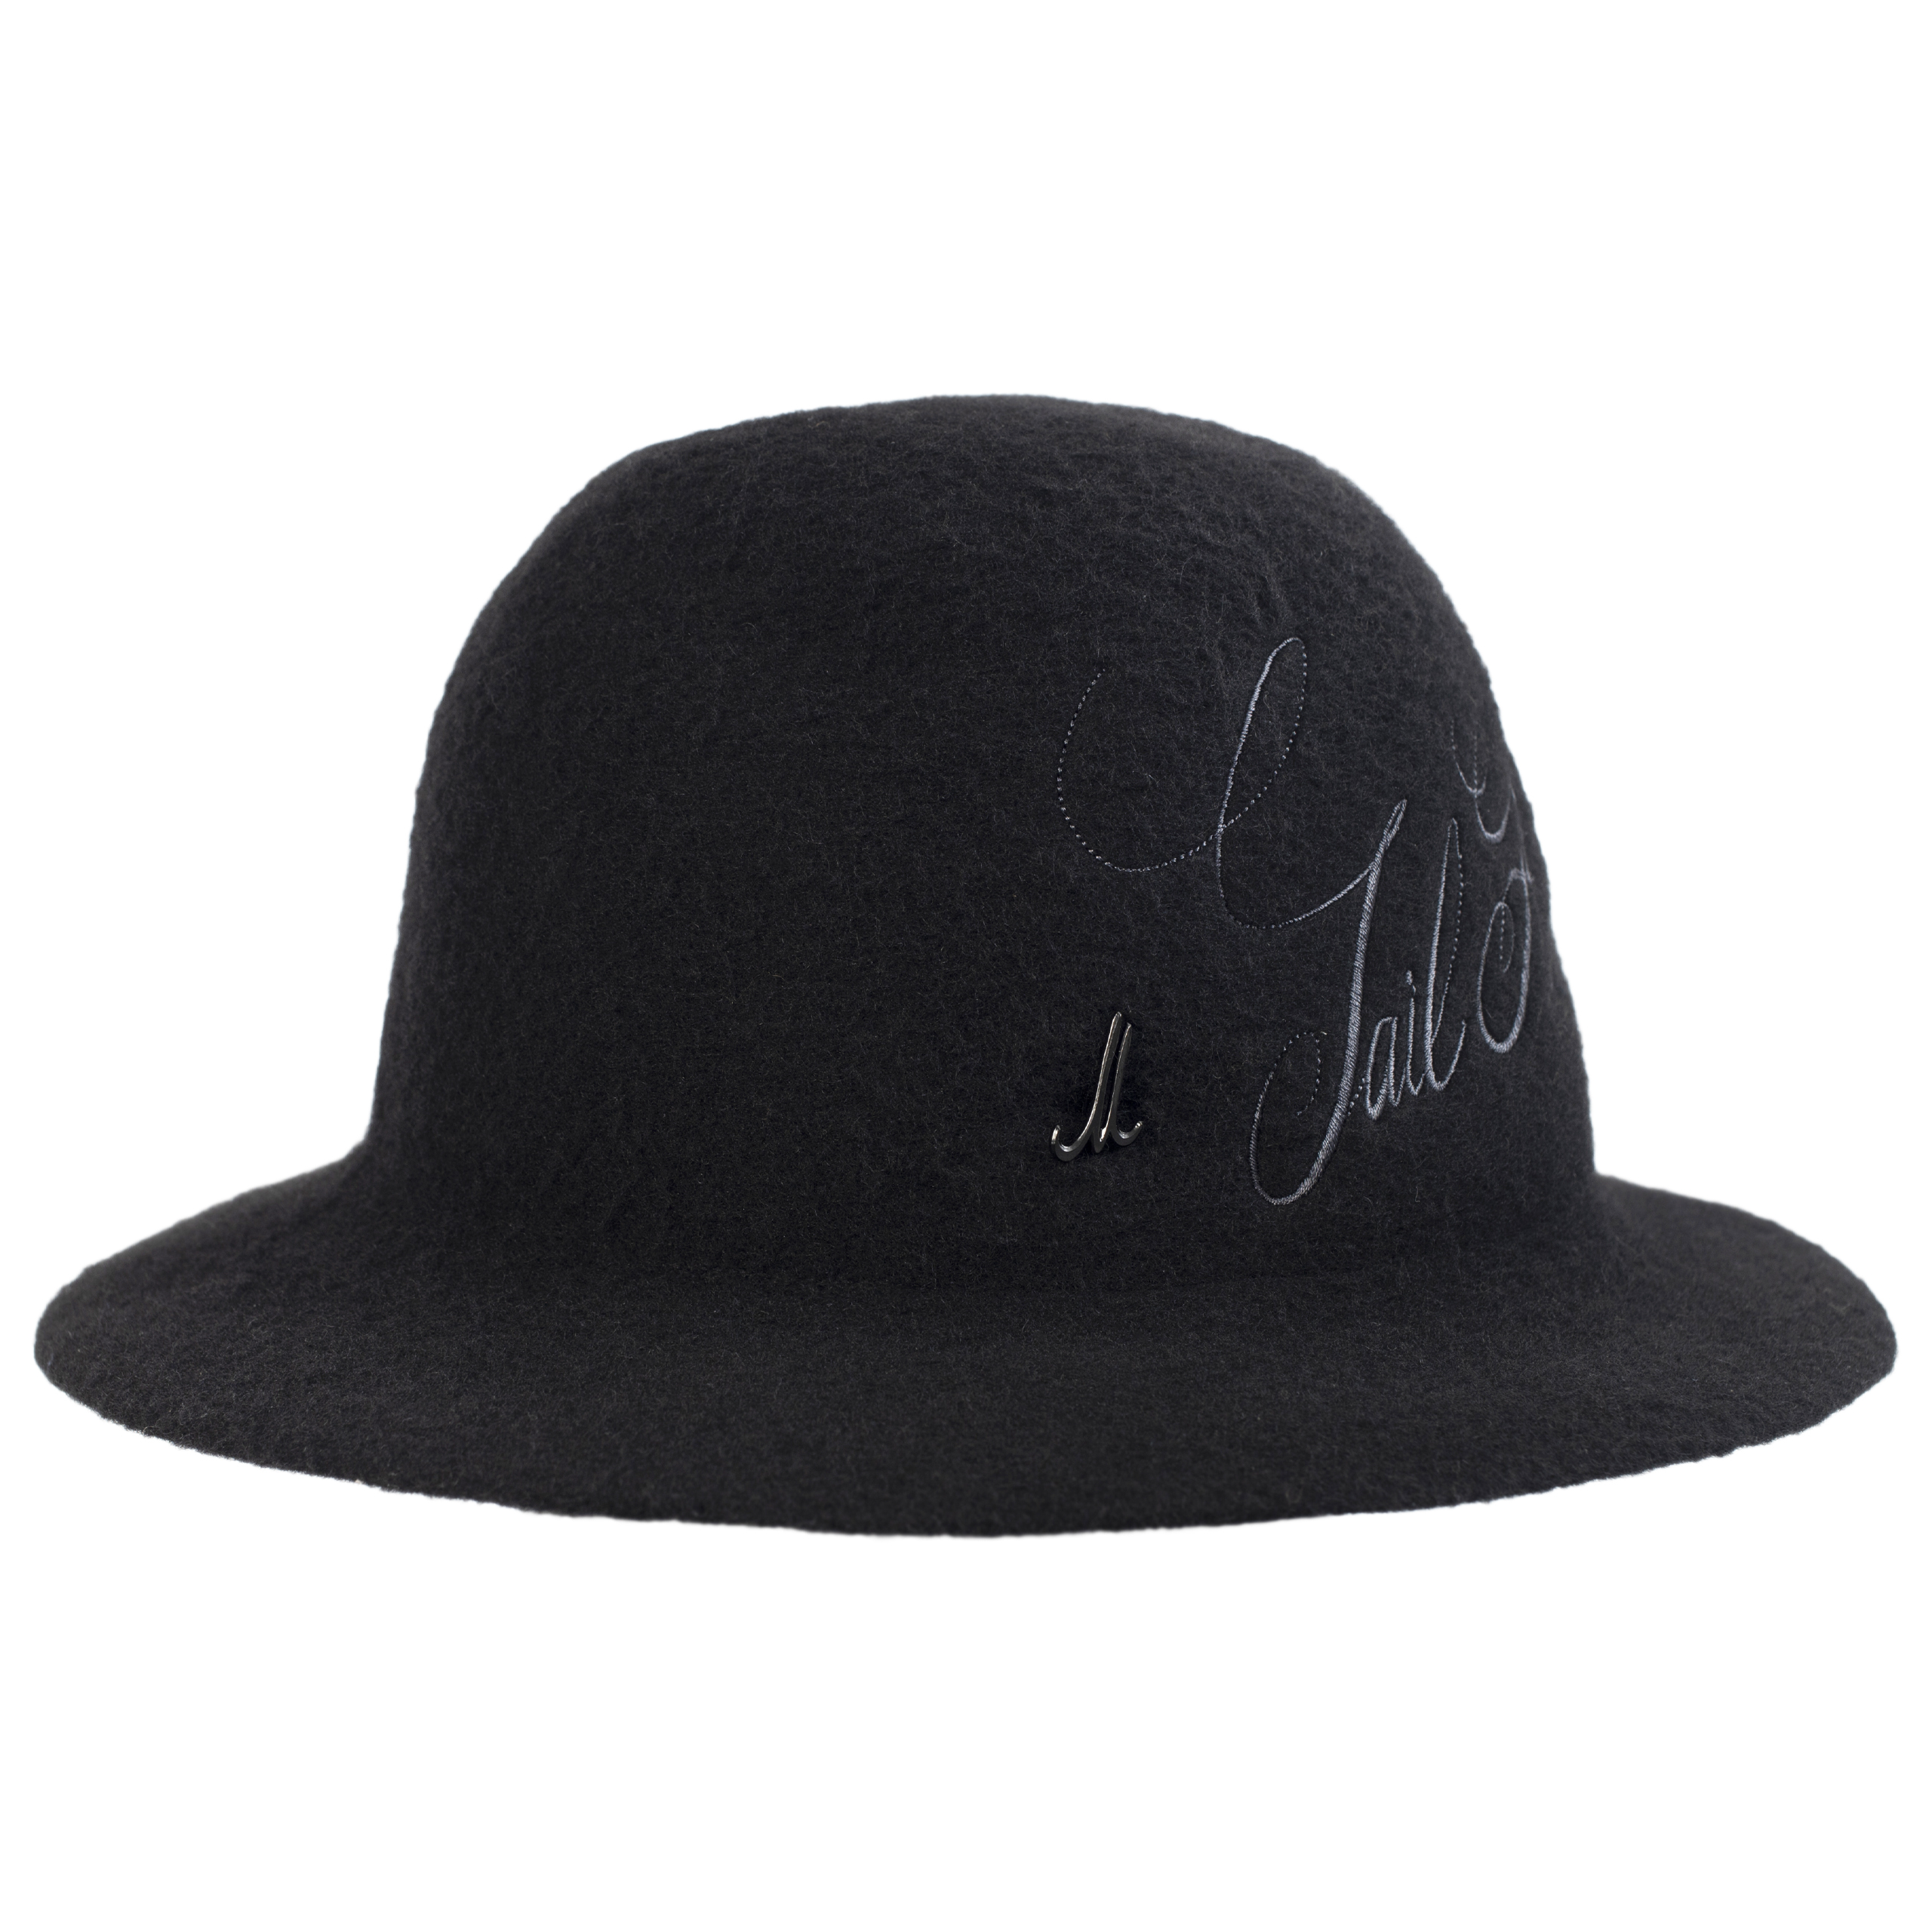 Шерстяная шляпа с вышитым логотипом Junya Watanabe WH-K606-051-1, размер 3 - фото 1